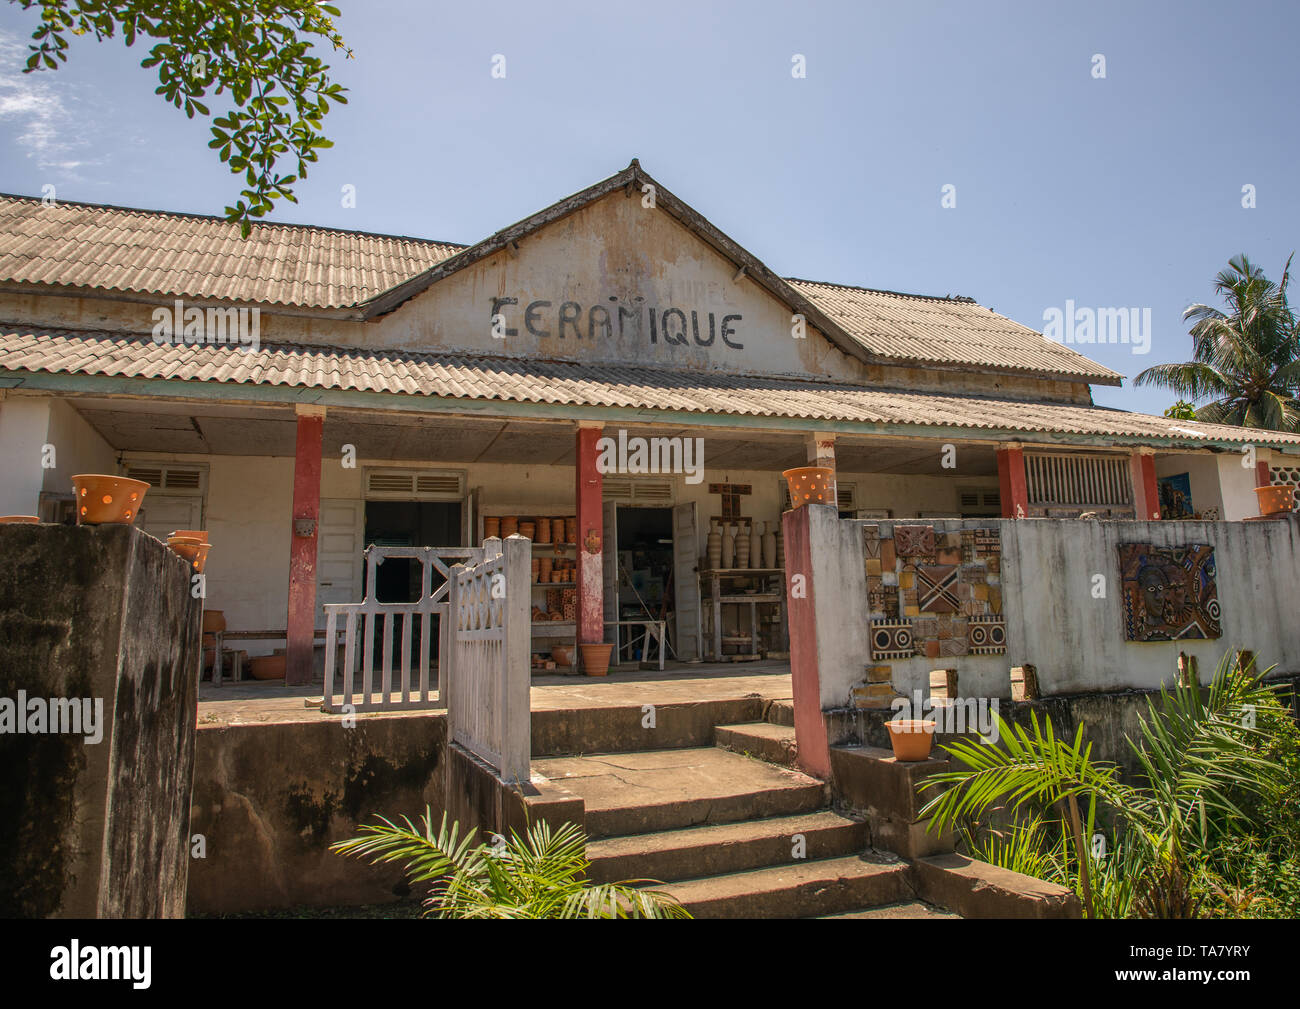 Centre céramique anciennement cercle de l'Union européenne, Sud-Comoé, Grand-Bassam, Côte d'Ivoire Banque D'Images